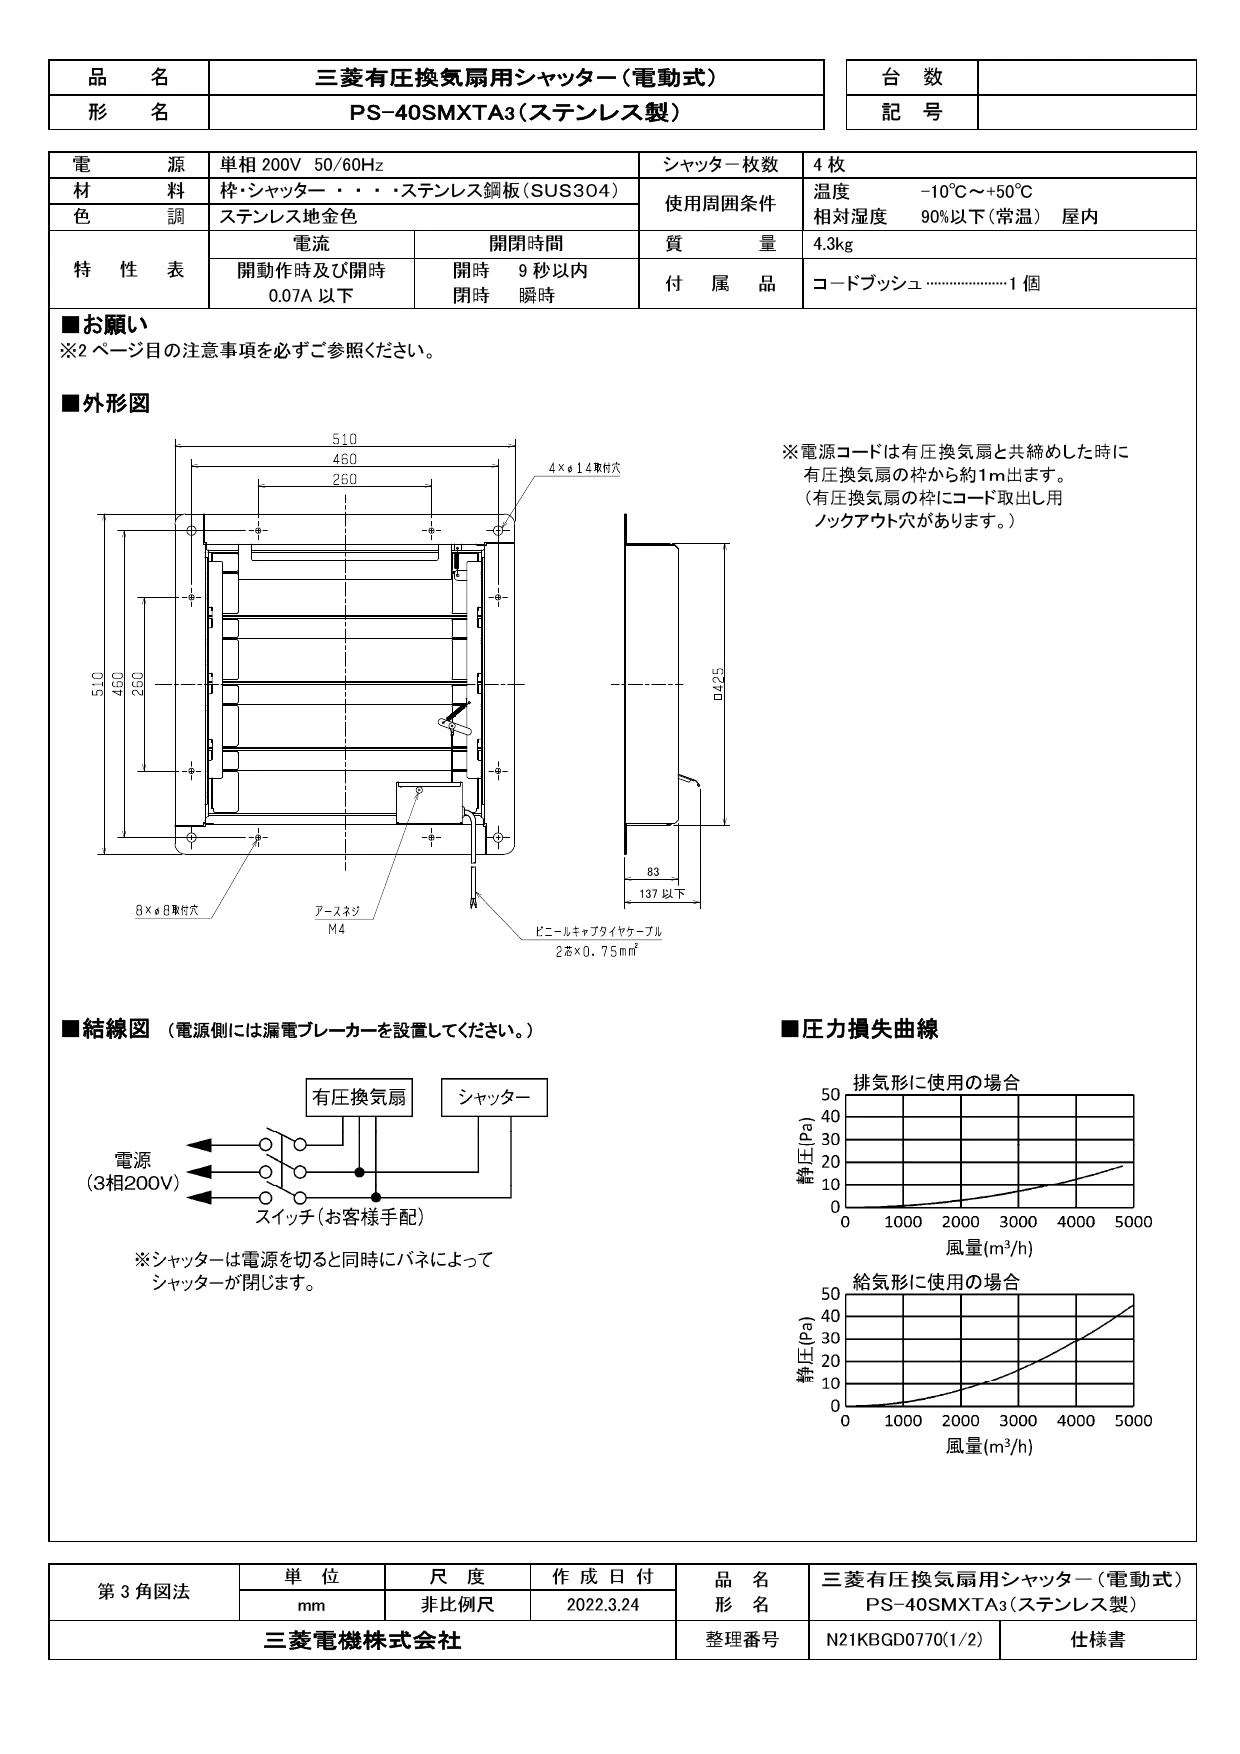 三菱電機 PS-40SMXTA3取扱説明書 納入仕様図 | 通販 プロストア ダイレクト